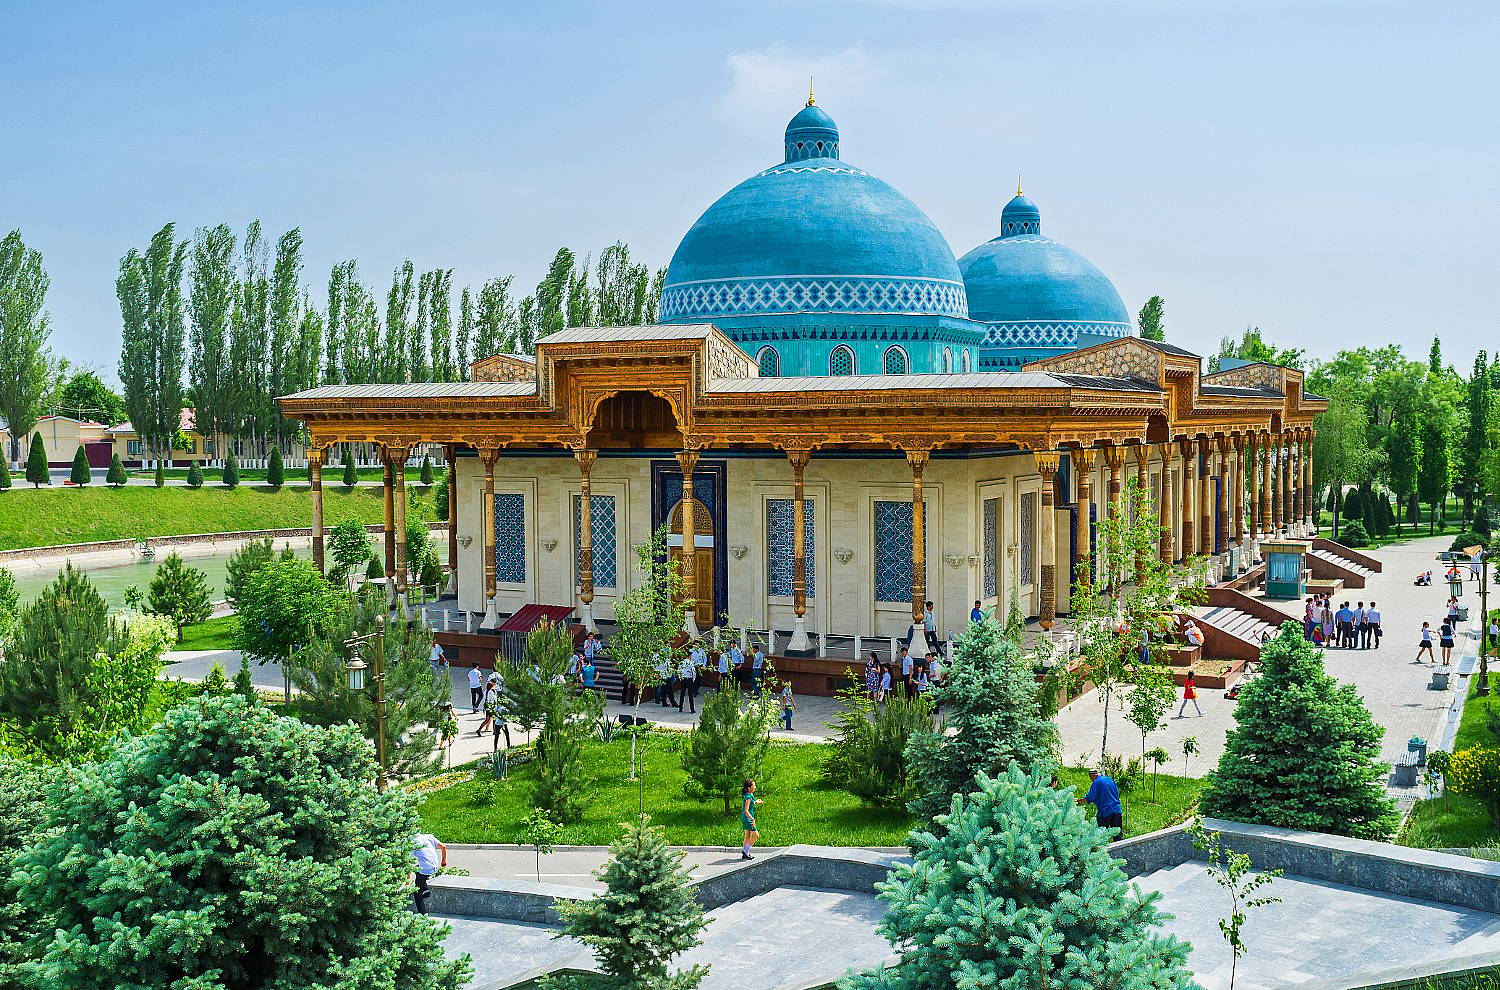  Arrivée à Tashkent et tour de ville dans la capitale